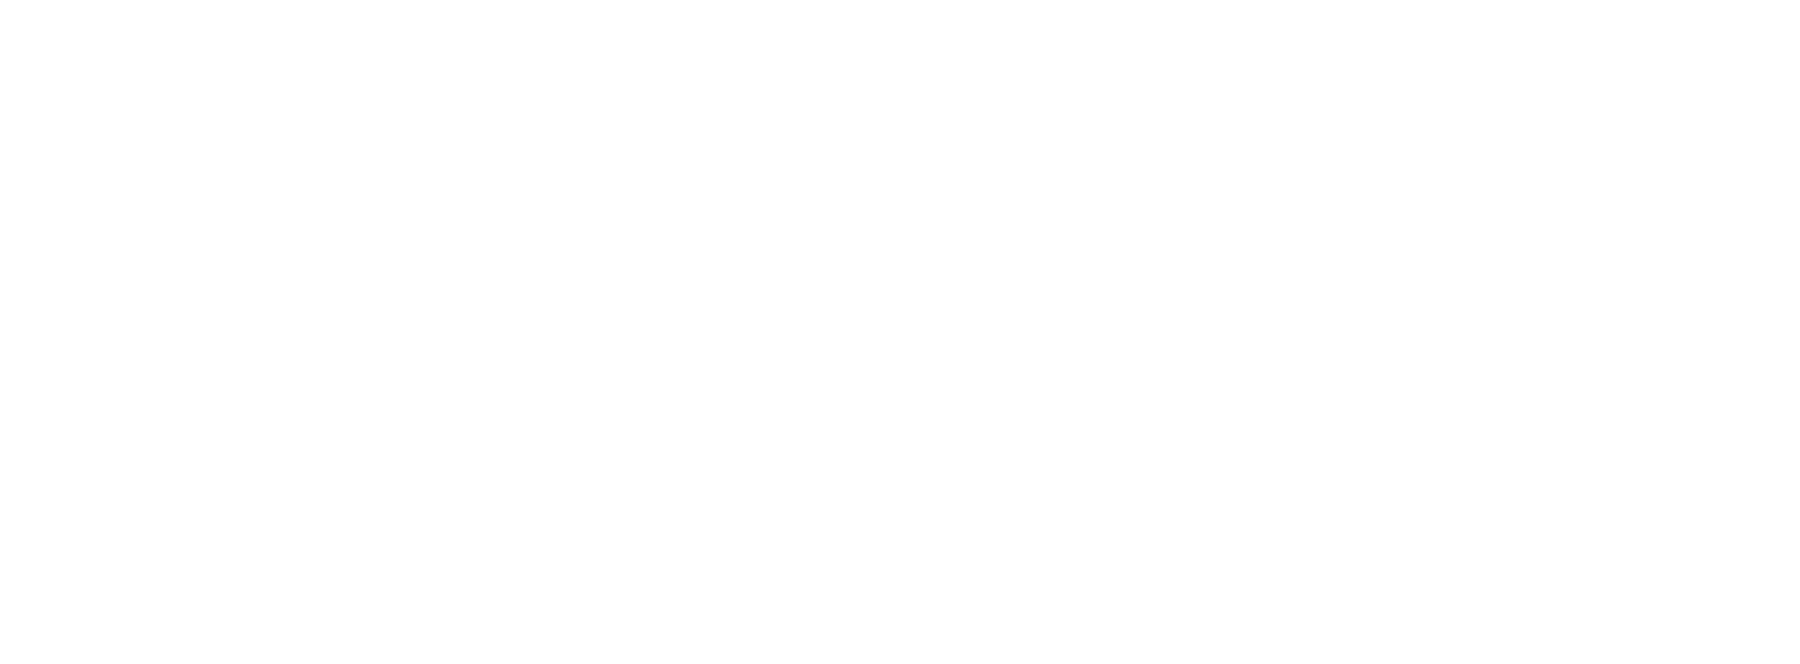 Logotipo branco da IBM